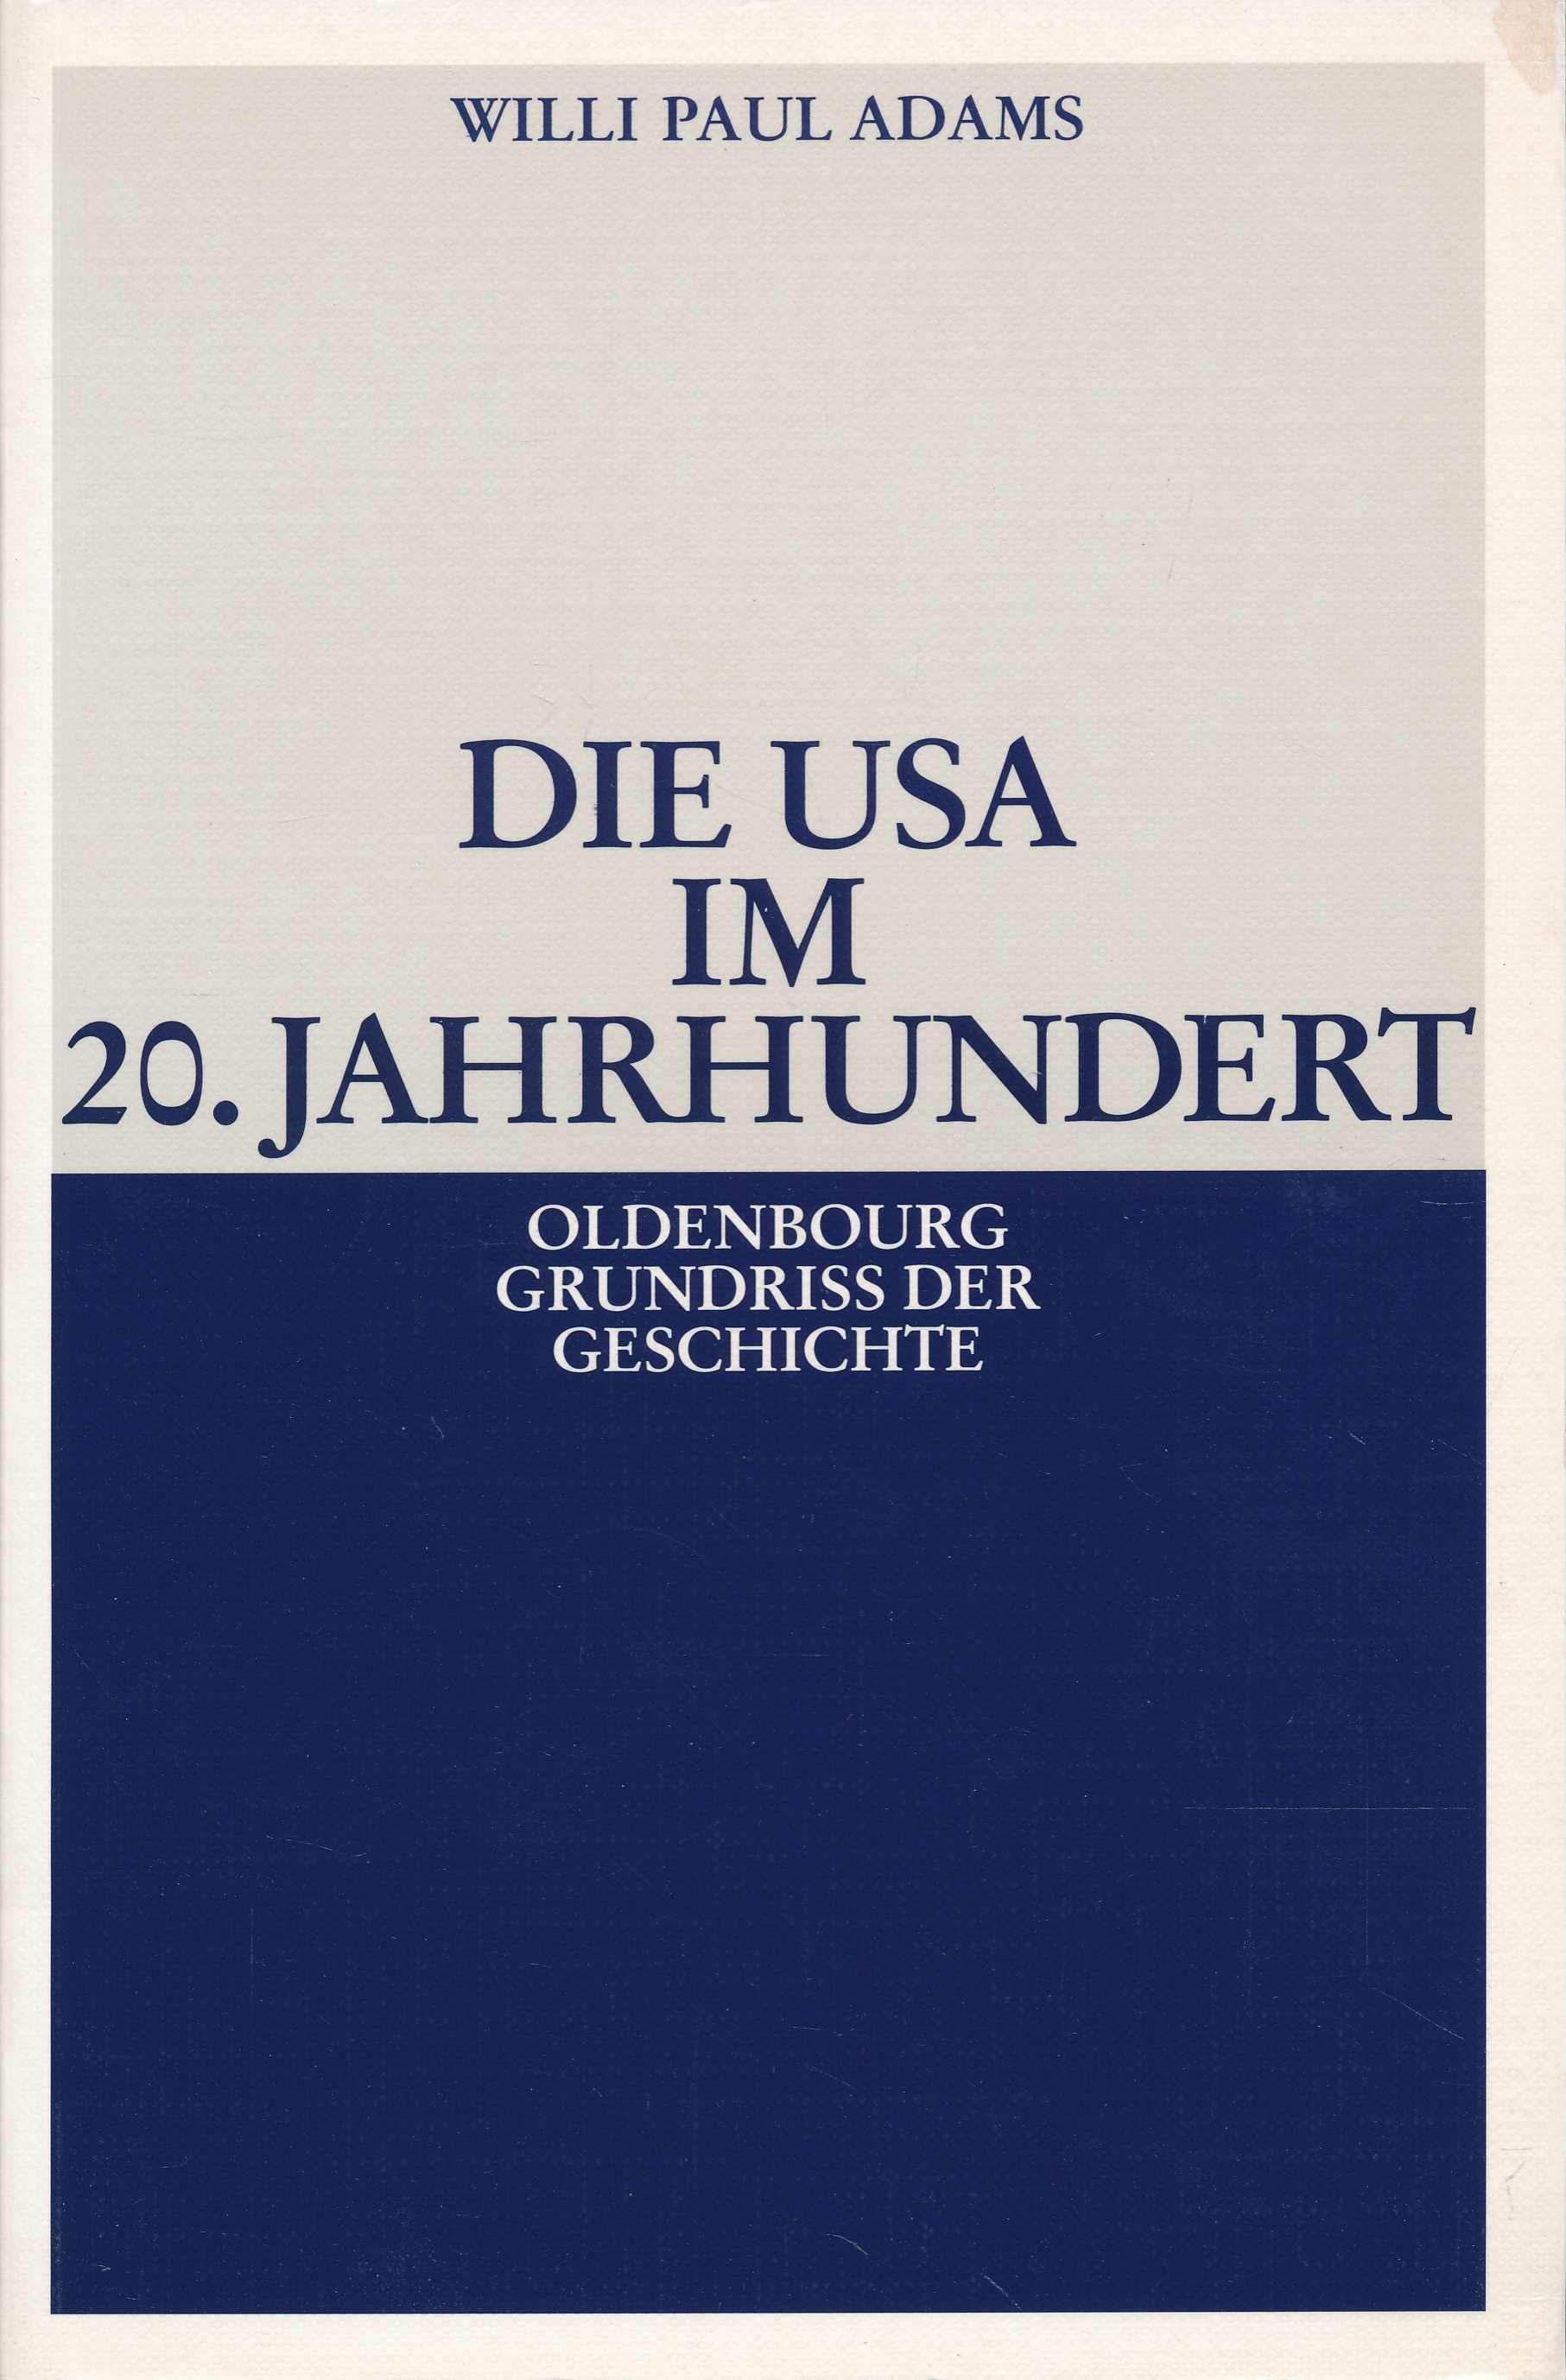 Die USA im 20. Jahrhundert. (Oldenbourg Grundriss der Geschichte, Band 29). - Adams, Willi Paul